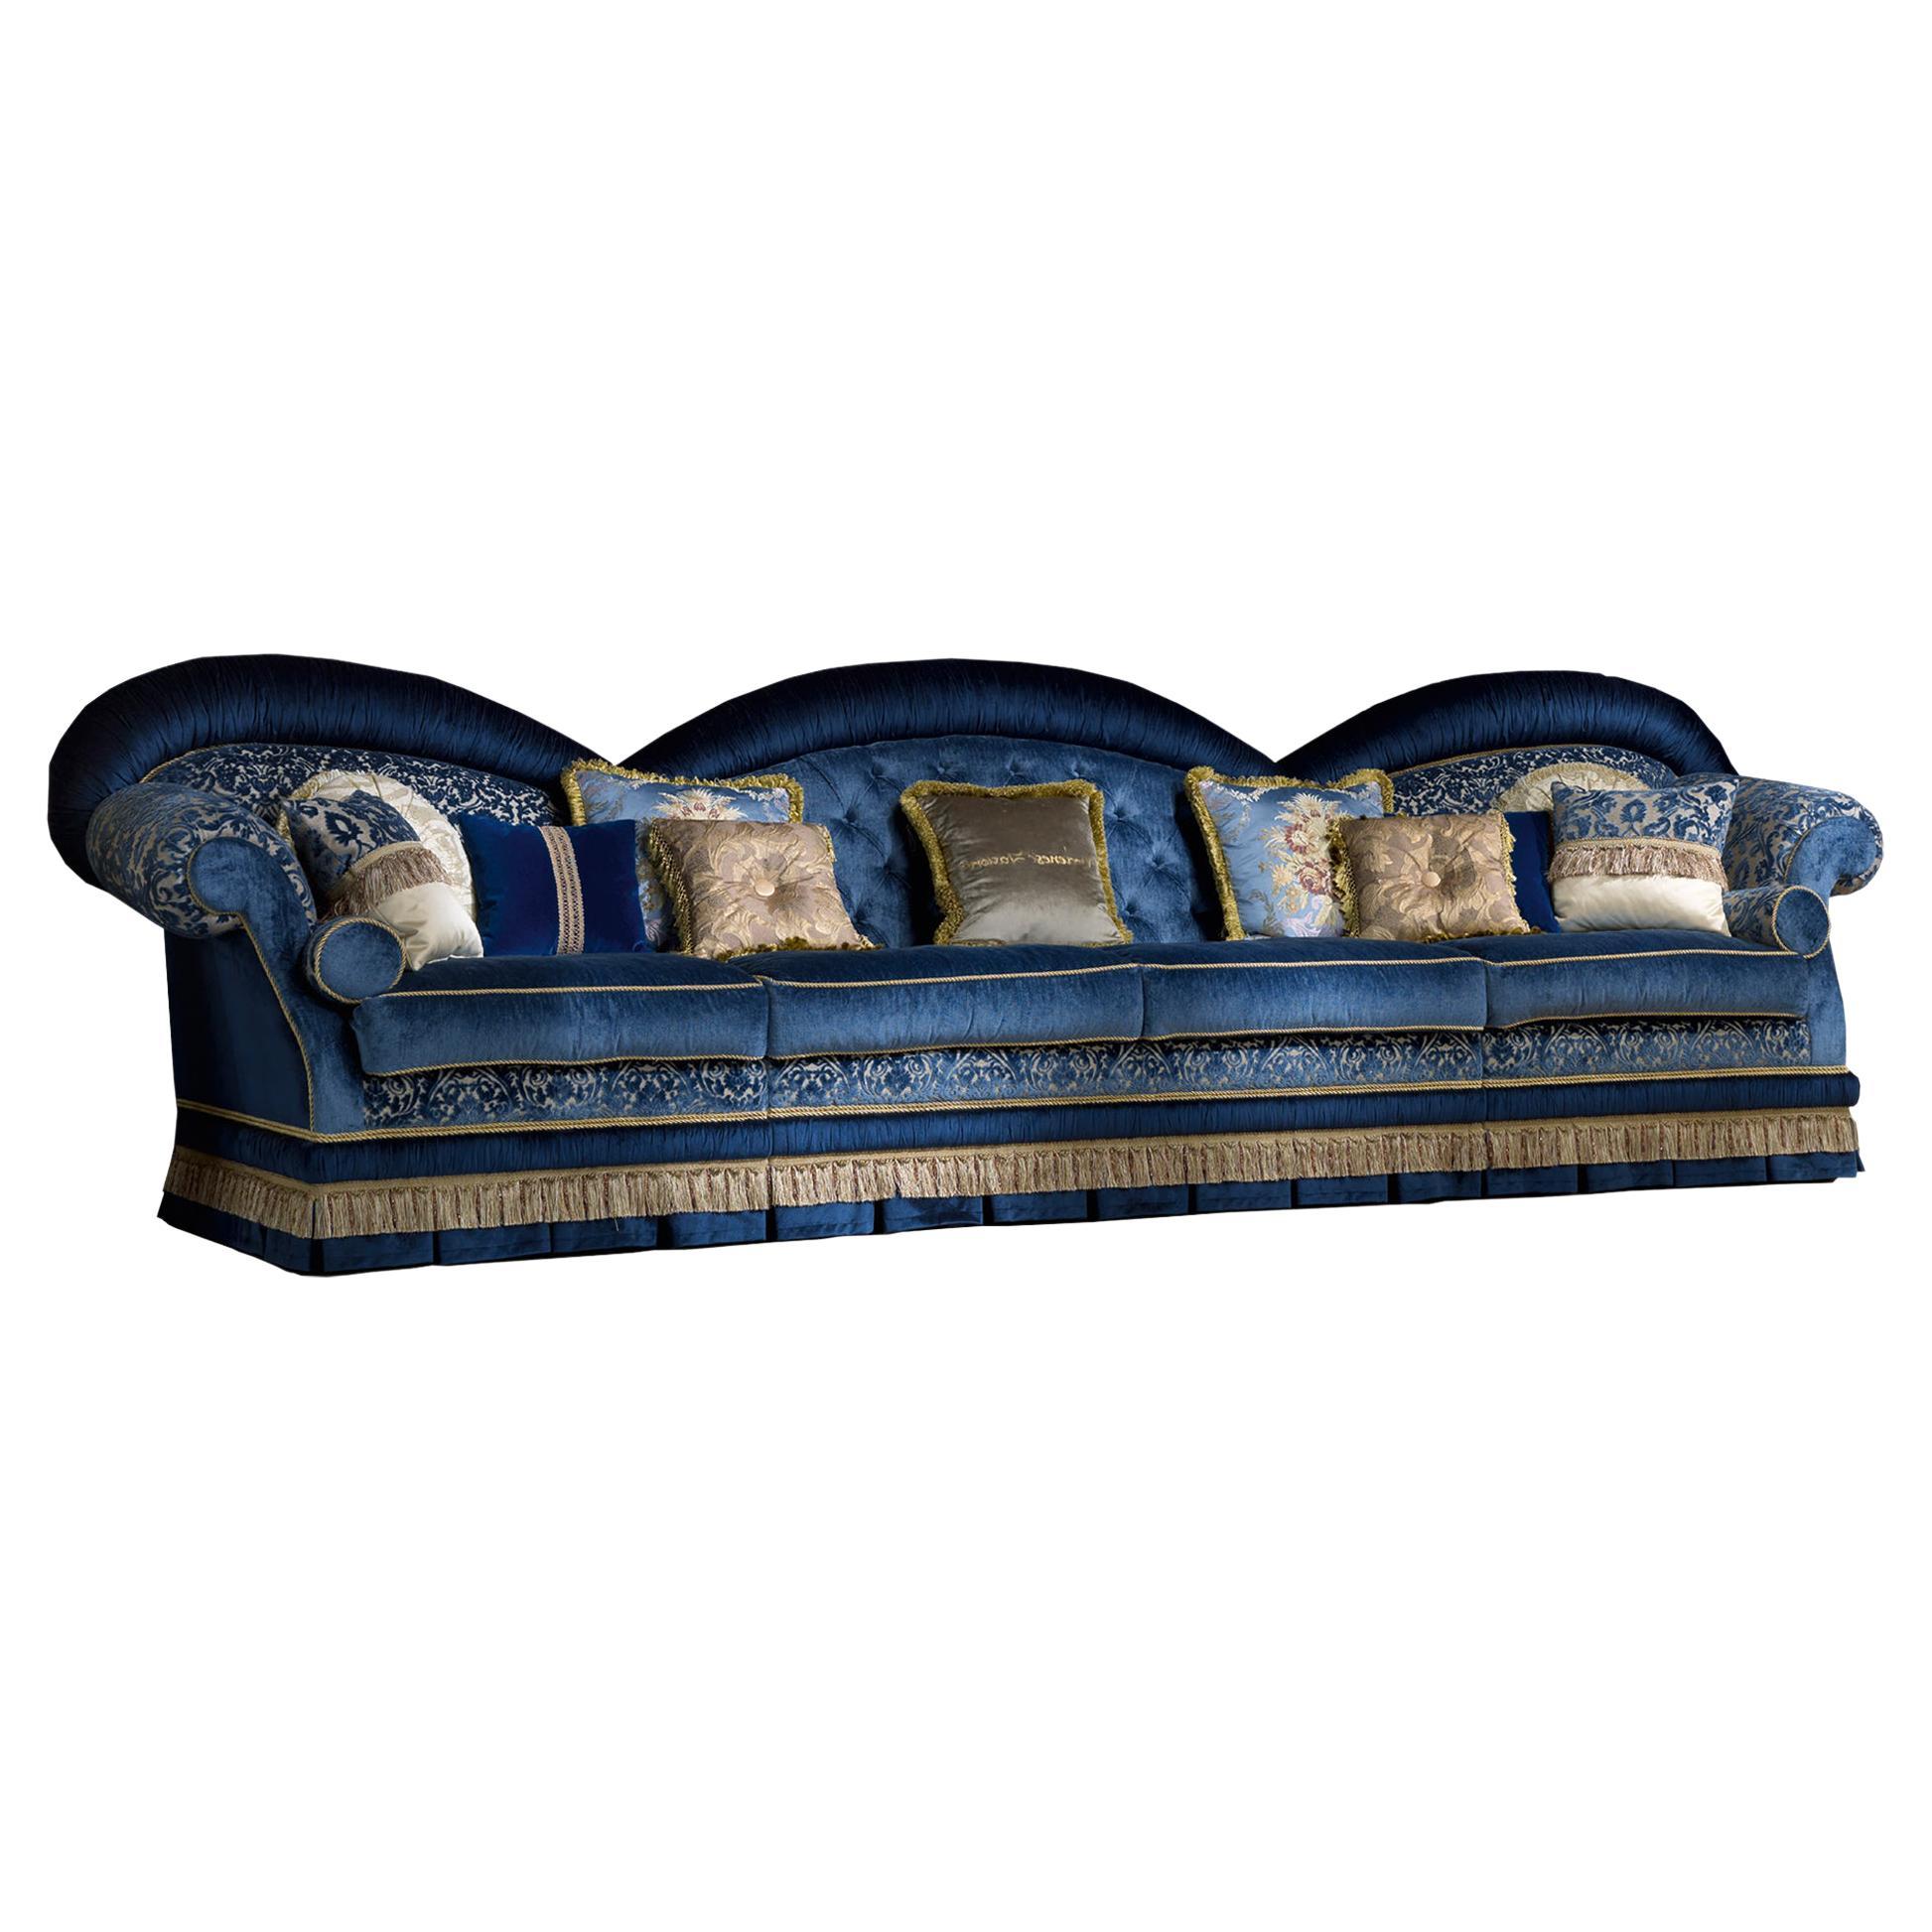 Canapé bleu royal en bois massif exclusif et capitonné de velours bleu